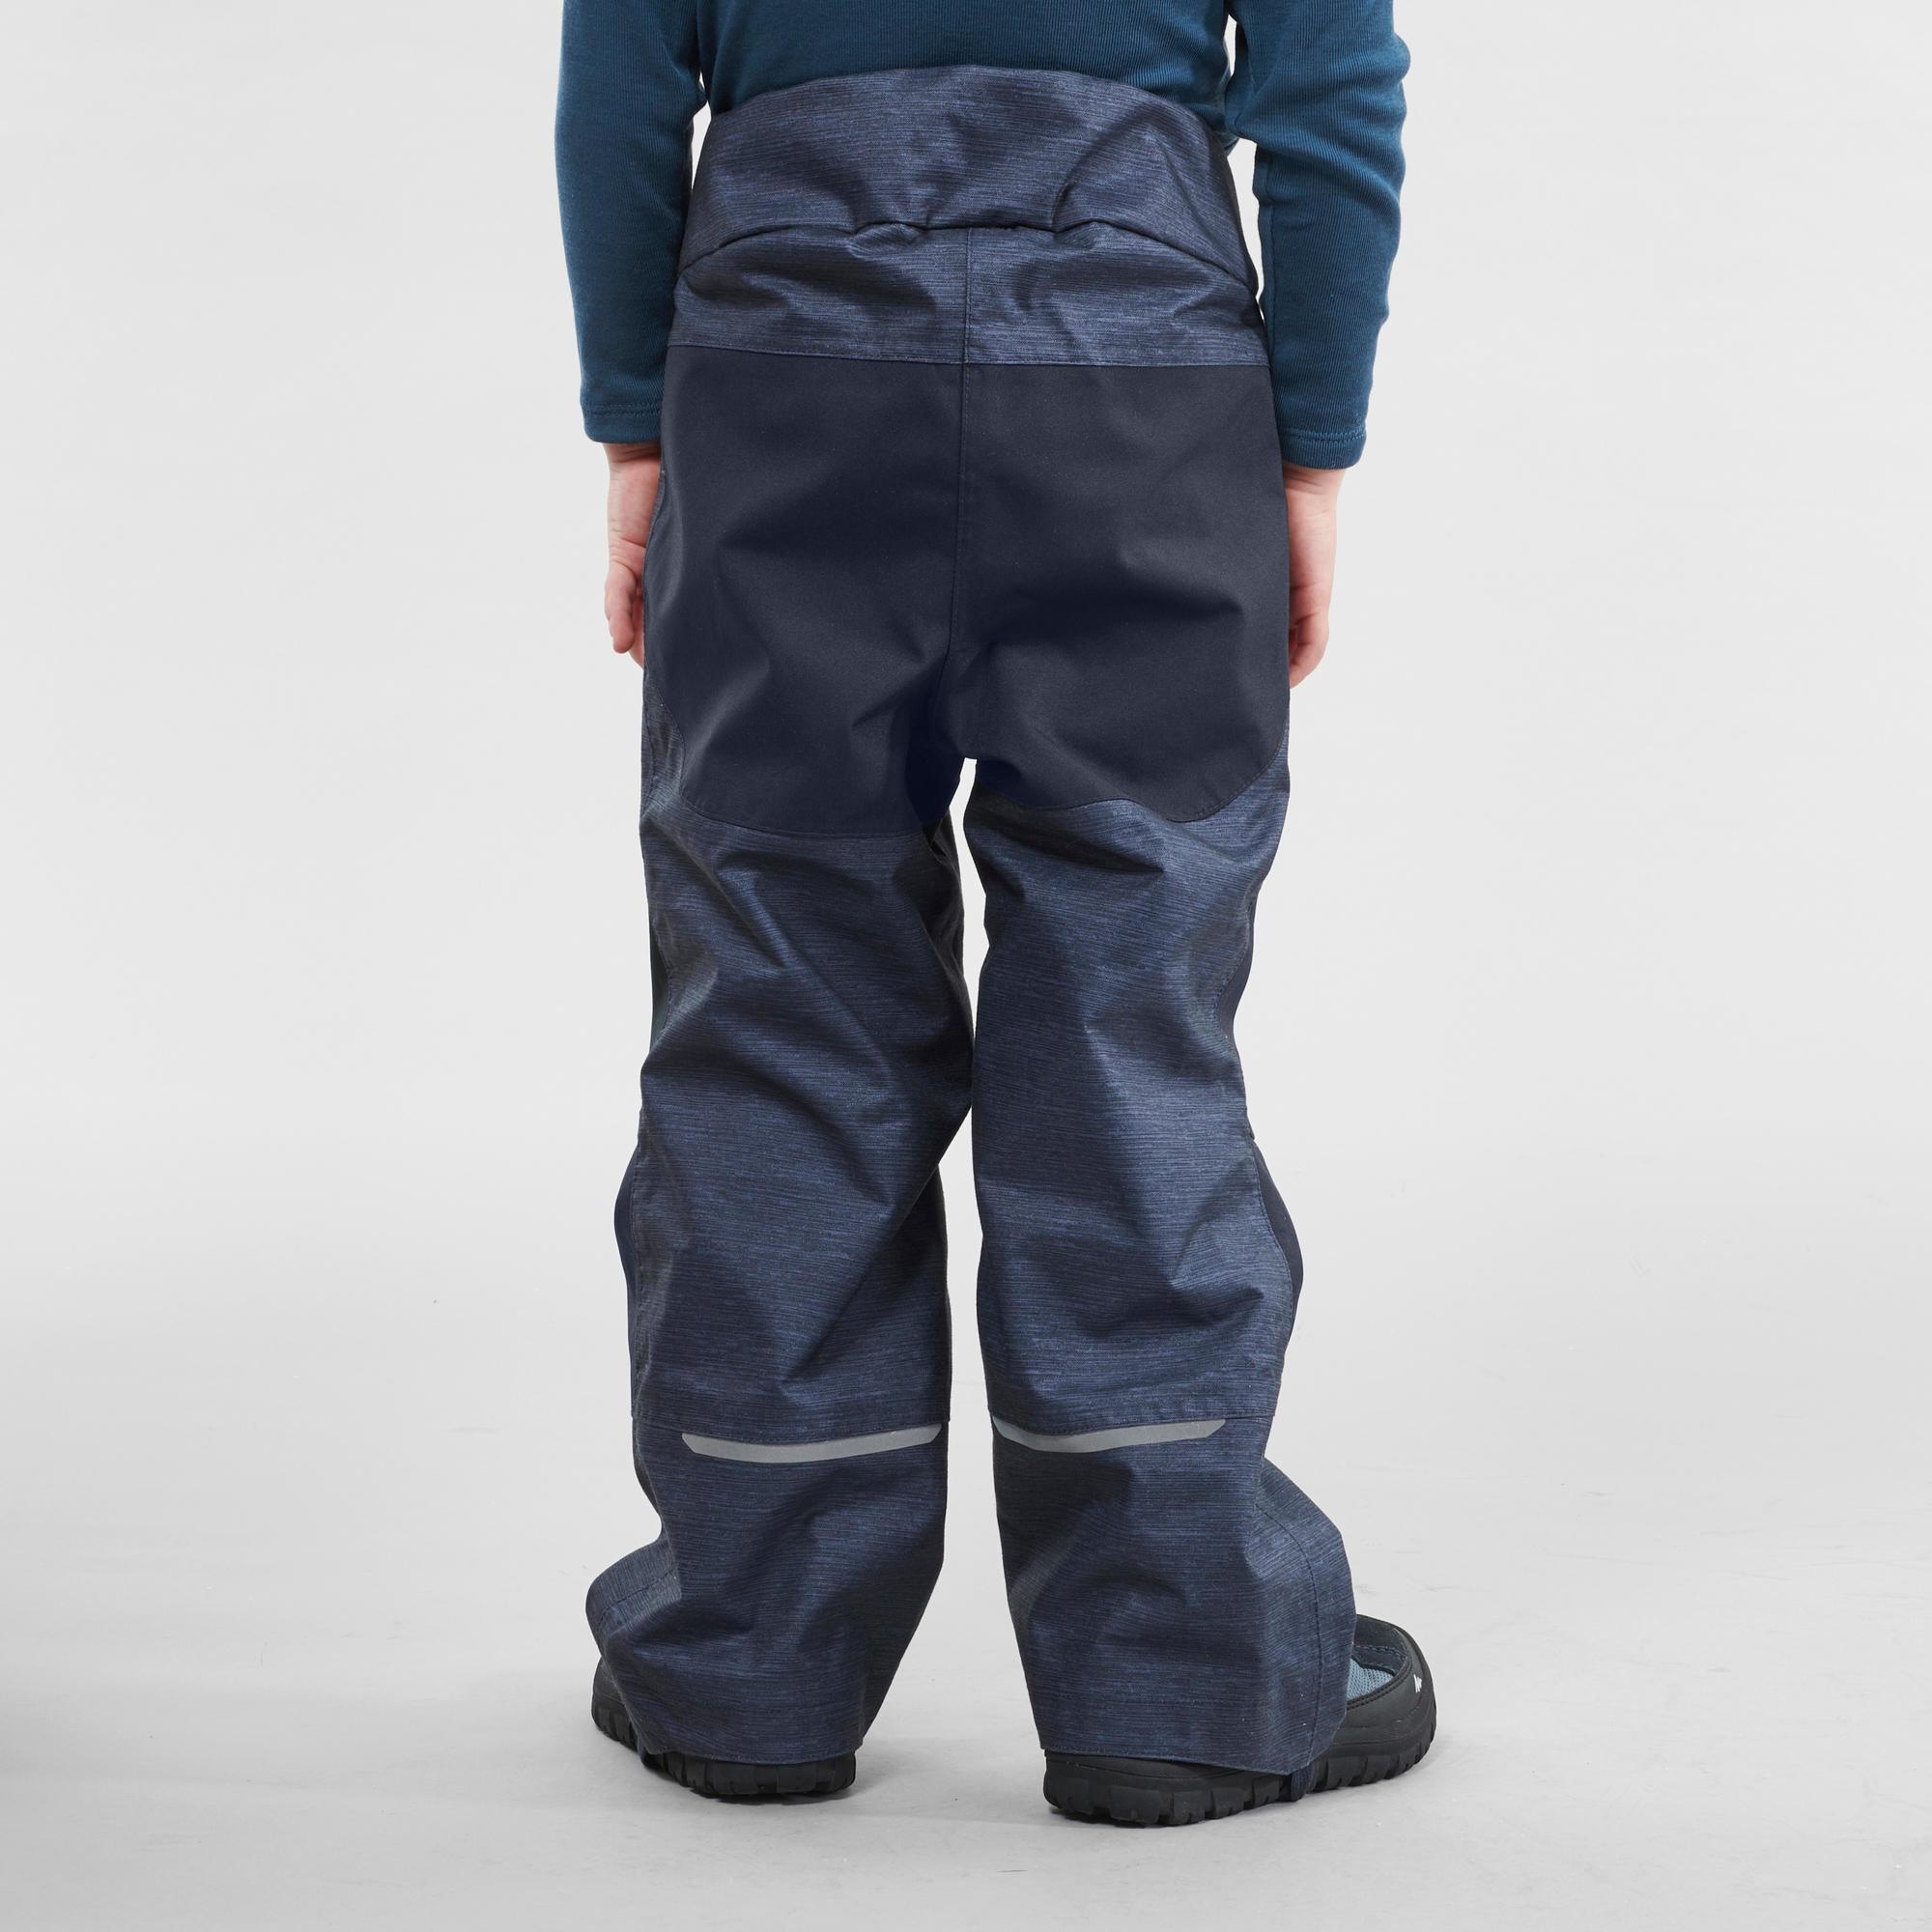 Pantalon de ski d'hiver Pantalon de snowboard ZARMEXX Pantalon thermique pour enfant garçon fille Pantalon de randonnée 